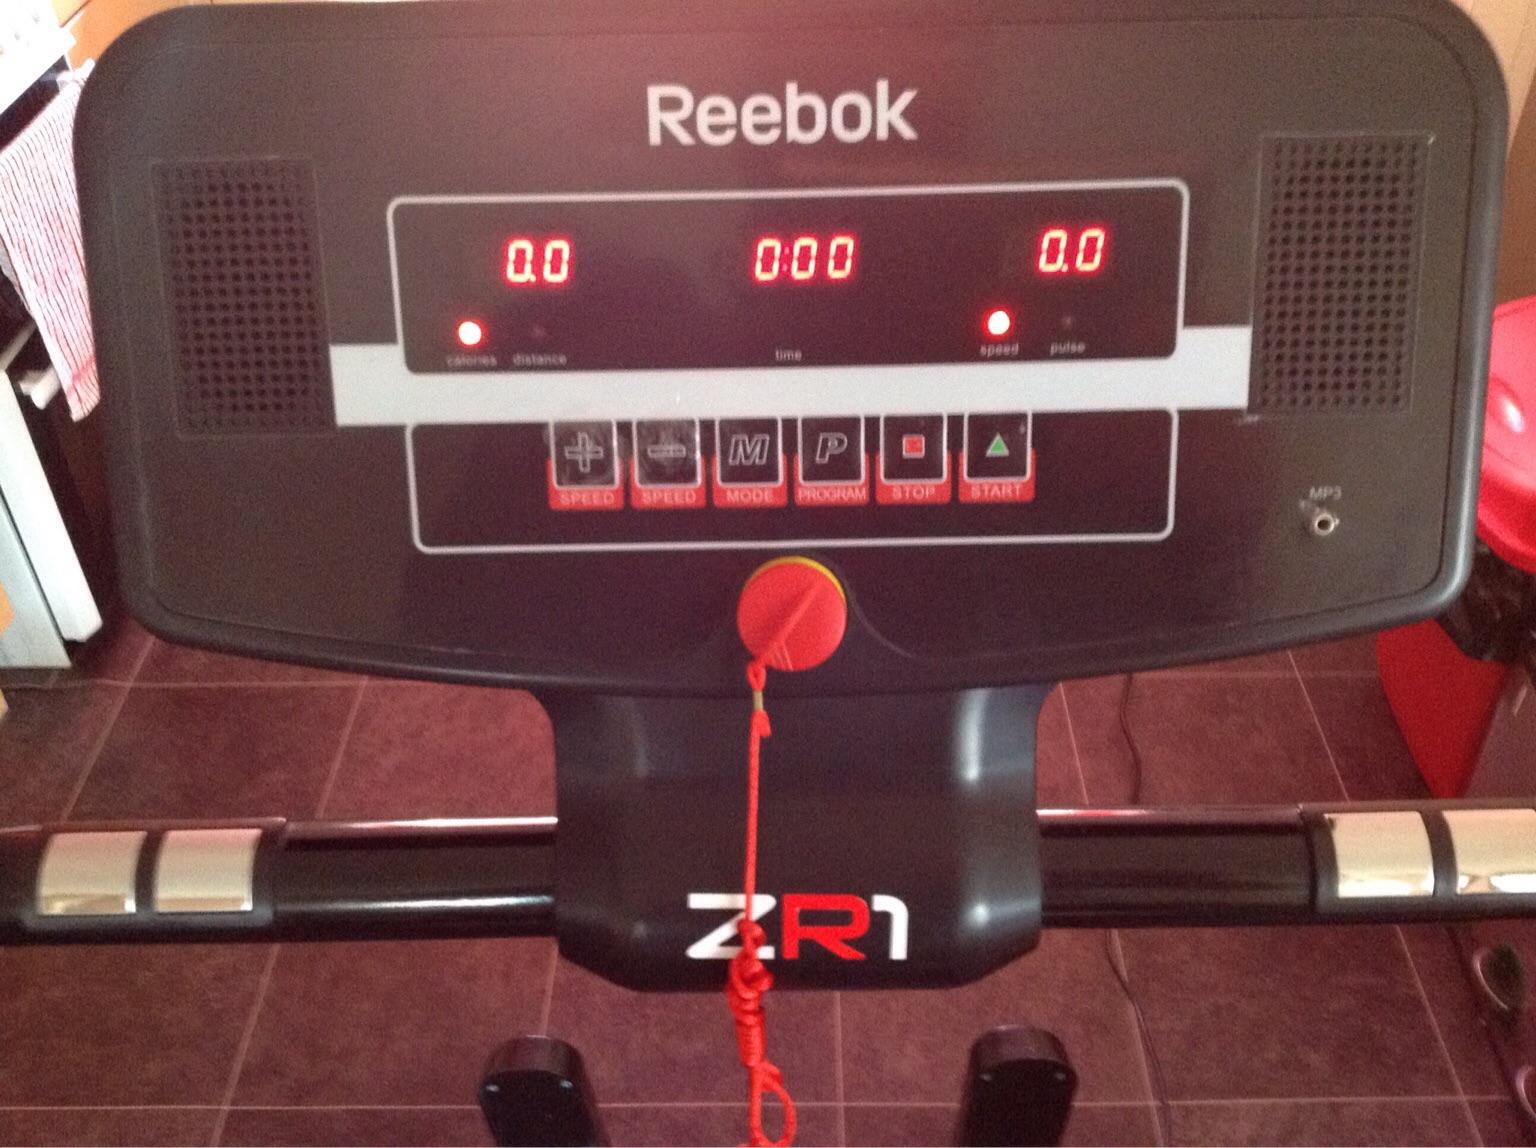 Reebok zr1 treadmill in CH43 Birkenhead 